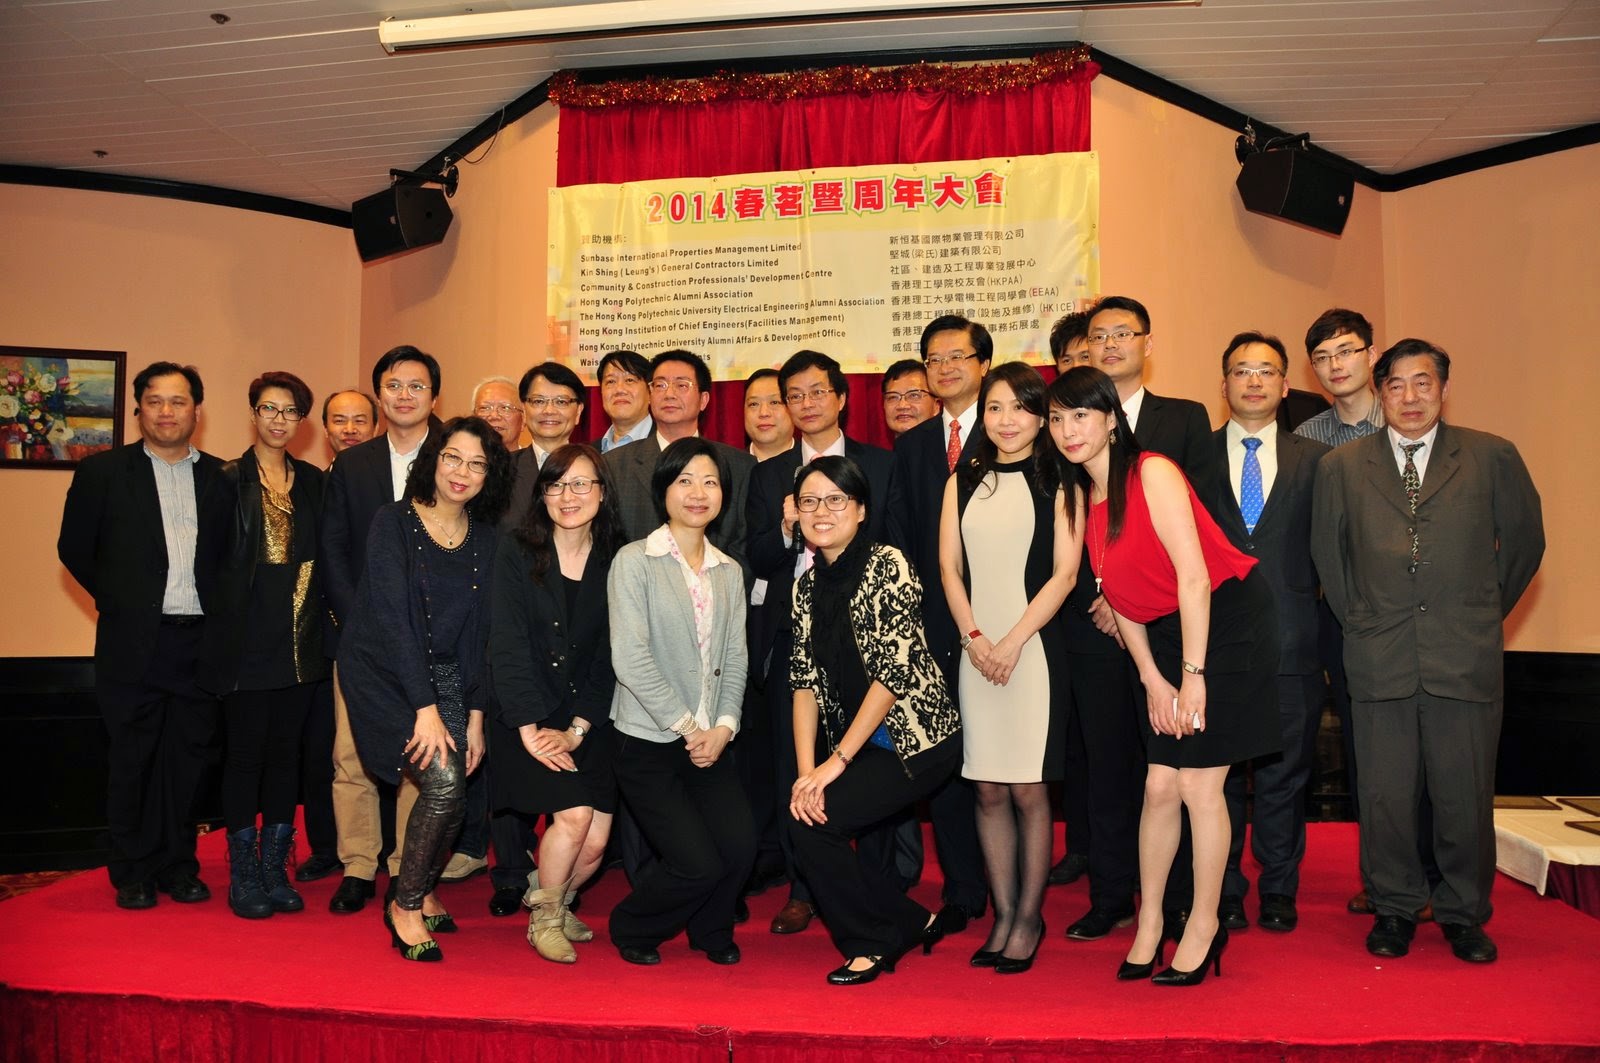 本會及香港理工學院校友會2014春茗 暨週年大會晚宴